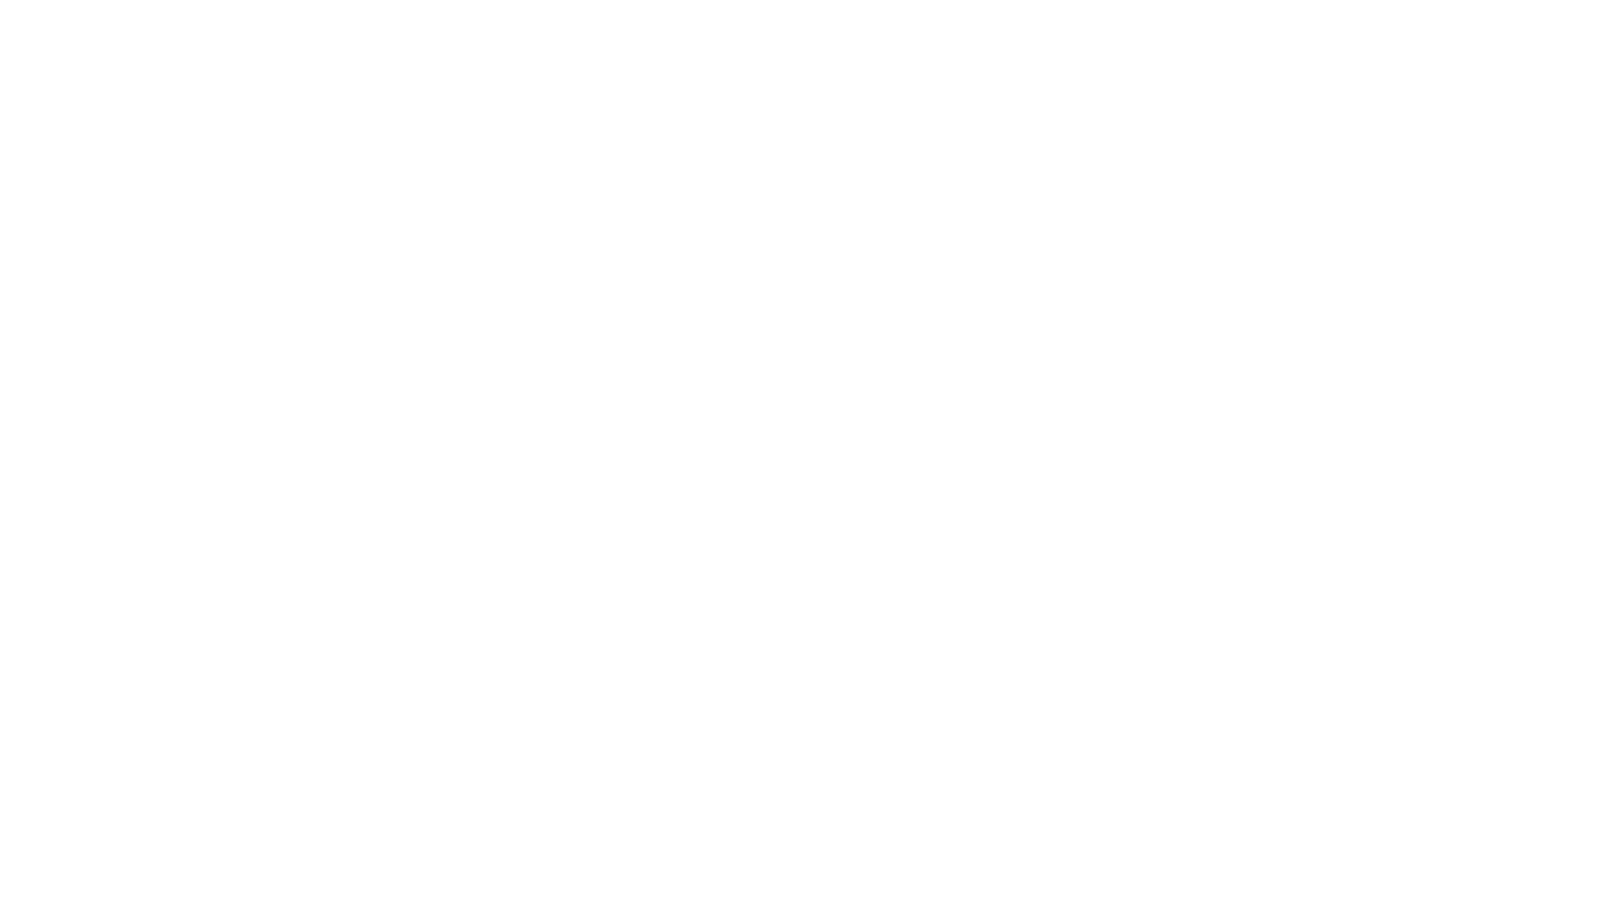 #مباشر | سماحة الخطيب #السيد_هاشم_الكربابادي  | المجلس الأسبوعي | ليلة 23 #ربيع_الثاني  1445 هجرية 

مجلس #اشبال_الزهراء عليها السلام 

الموقع الرسمي لاشبال الزهراء عليها السلام 

www.ashbaal.com